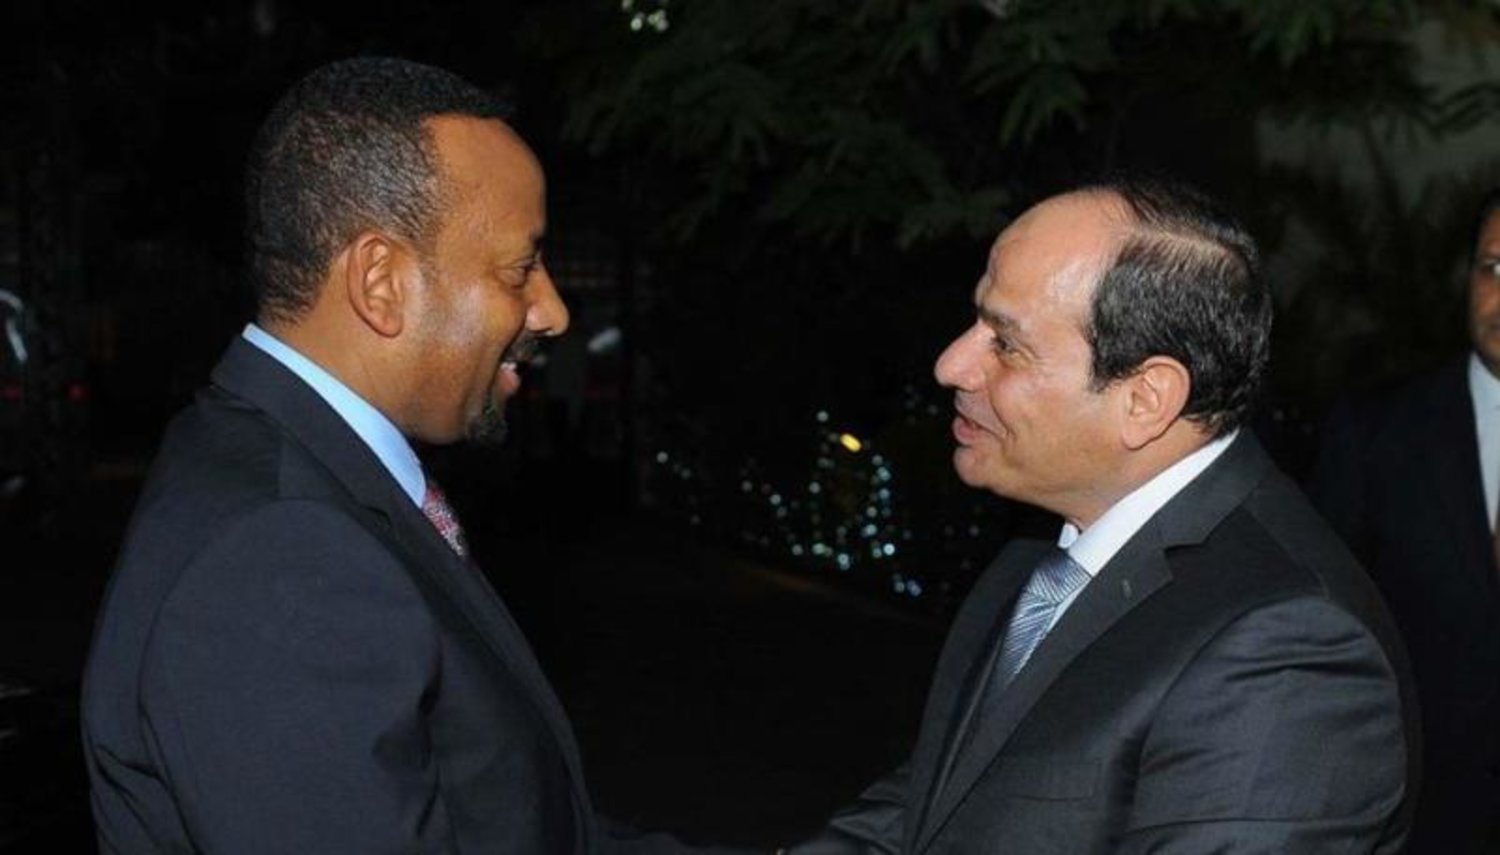 السيسي خلال استقباله رئيس الوزراء الإثيوبي في القاهرة (رئاسة الجمهورية)